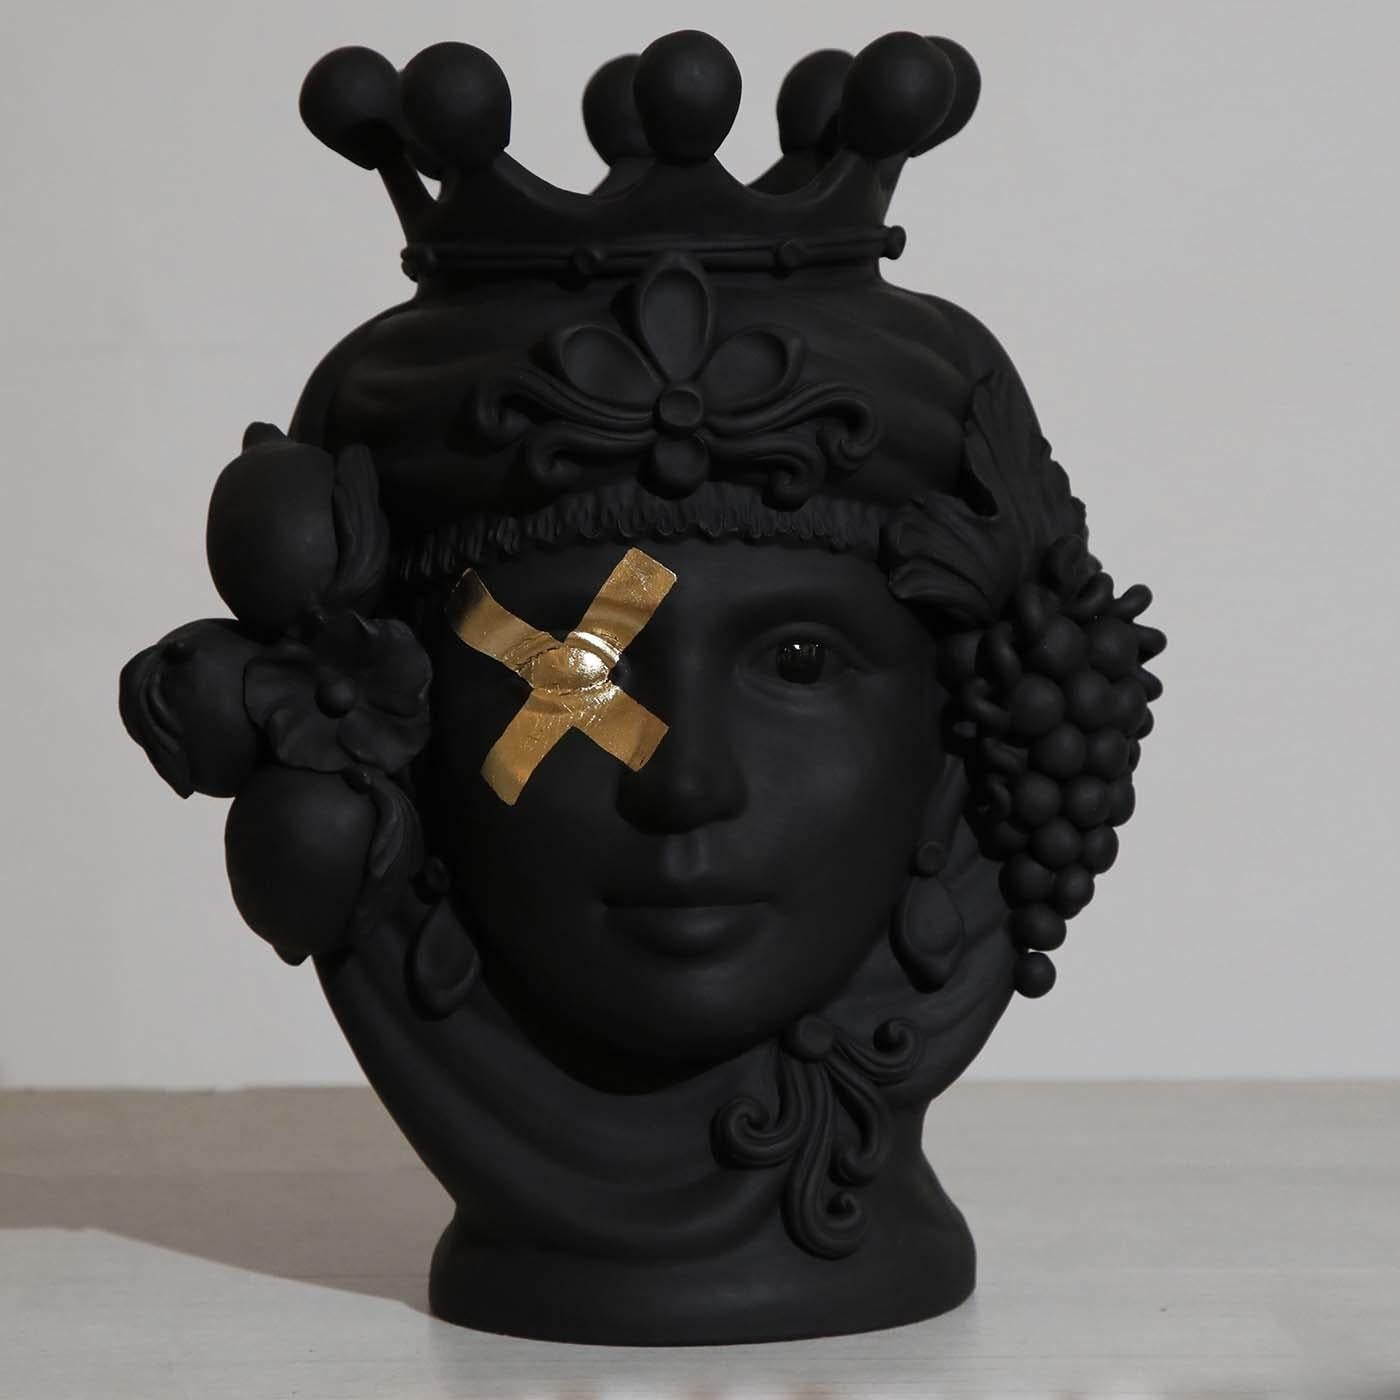 Habilement réalisé à la main par la sculptrice Stefania Boemi, ce vase anthropomorphe représentant une femme est un hommage saisissant aux riches traditions culturelles de la Sicile. Le sujet est tiré de la tradition sicilienne, une histoire d'amour